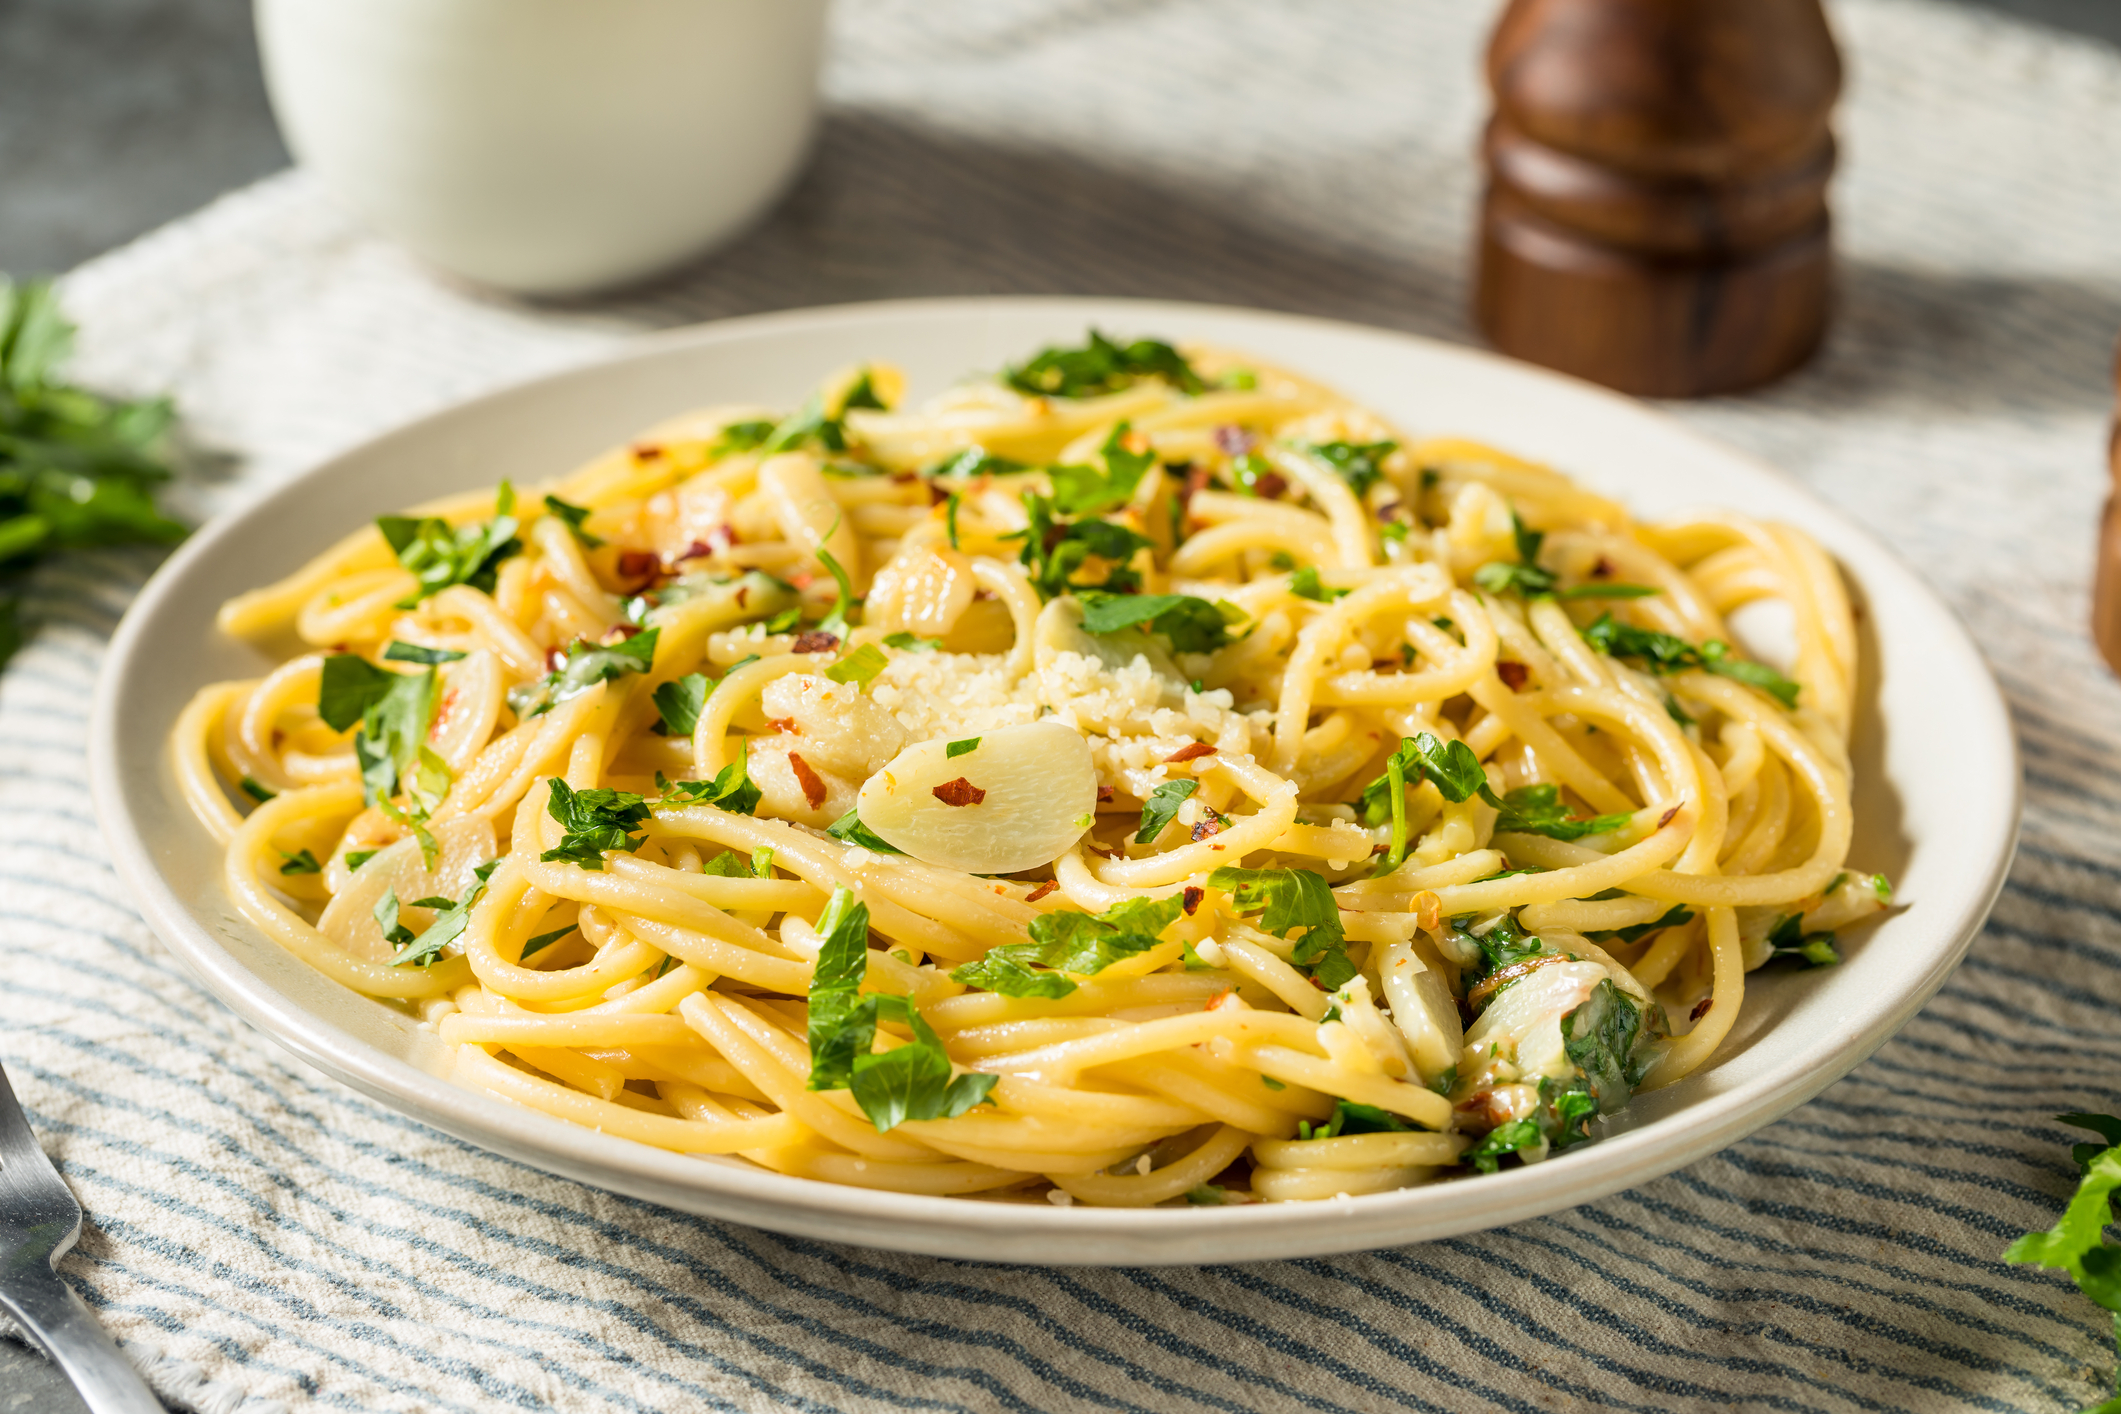 Nu ai mai nimic prin frigider de mâncare? Prepară rapid niște paste Bianco aglio. Toți vor spune că le-a gătit un Masterchef